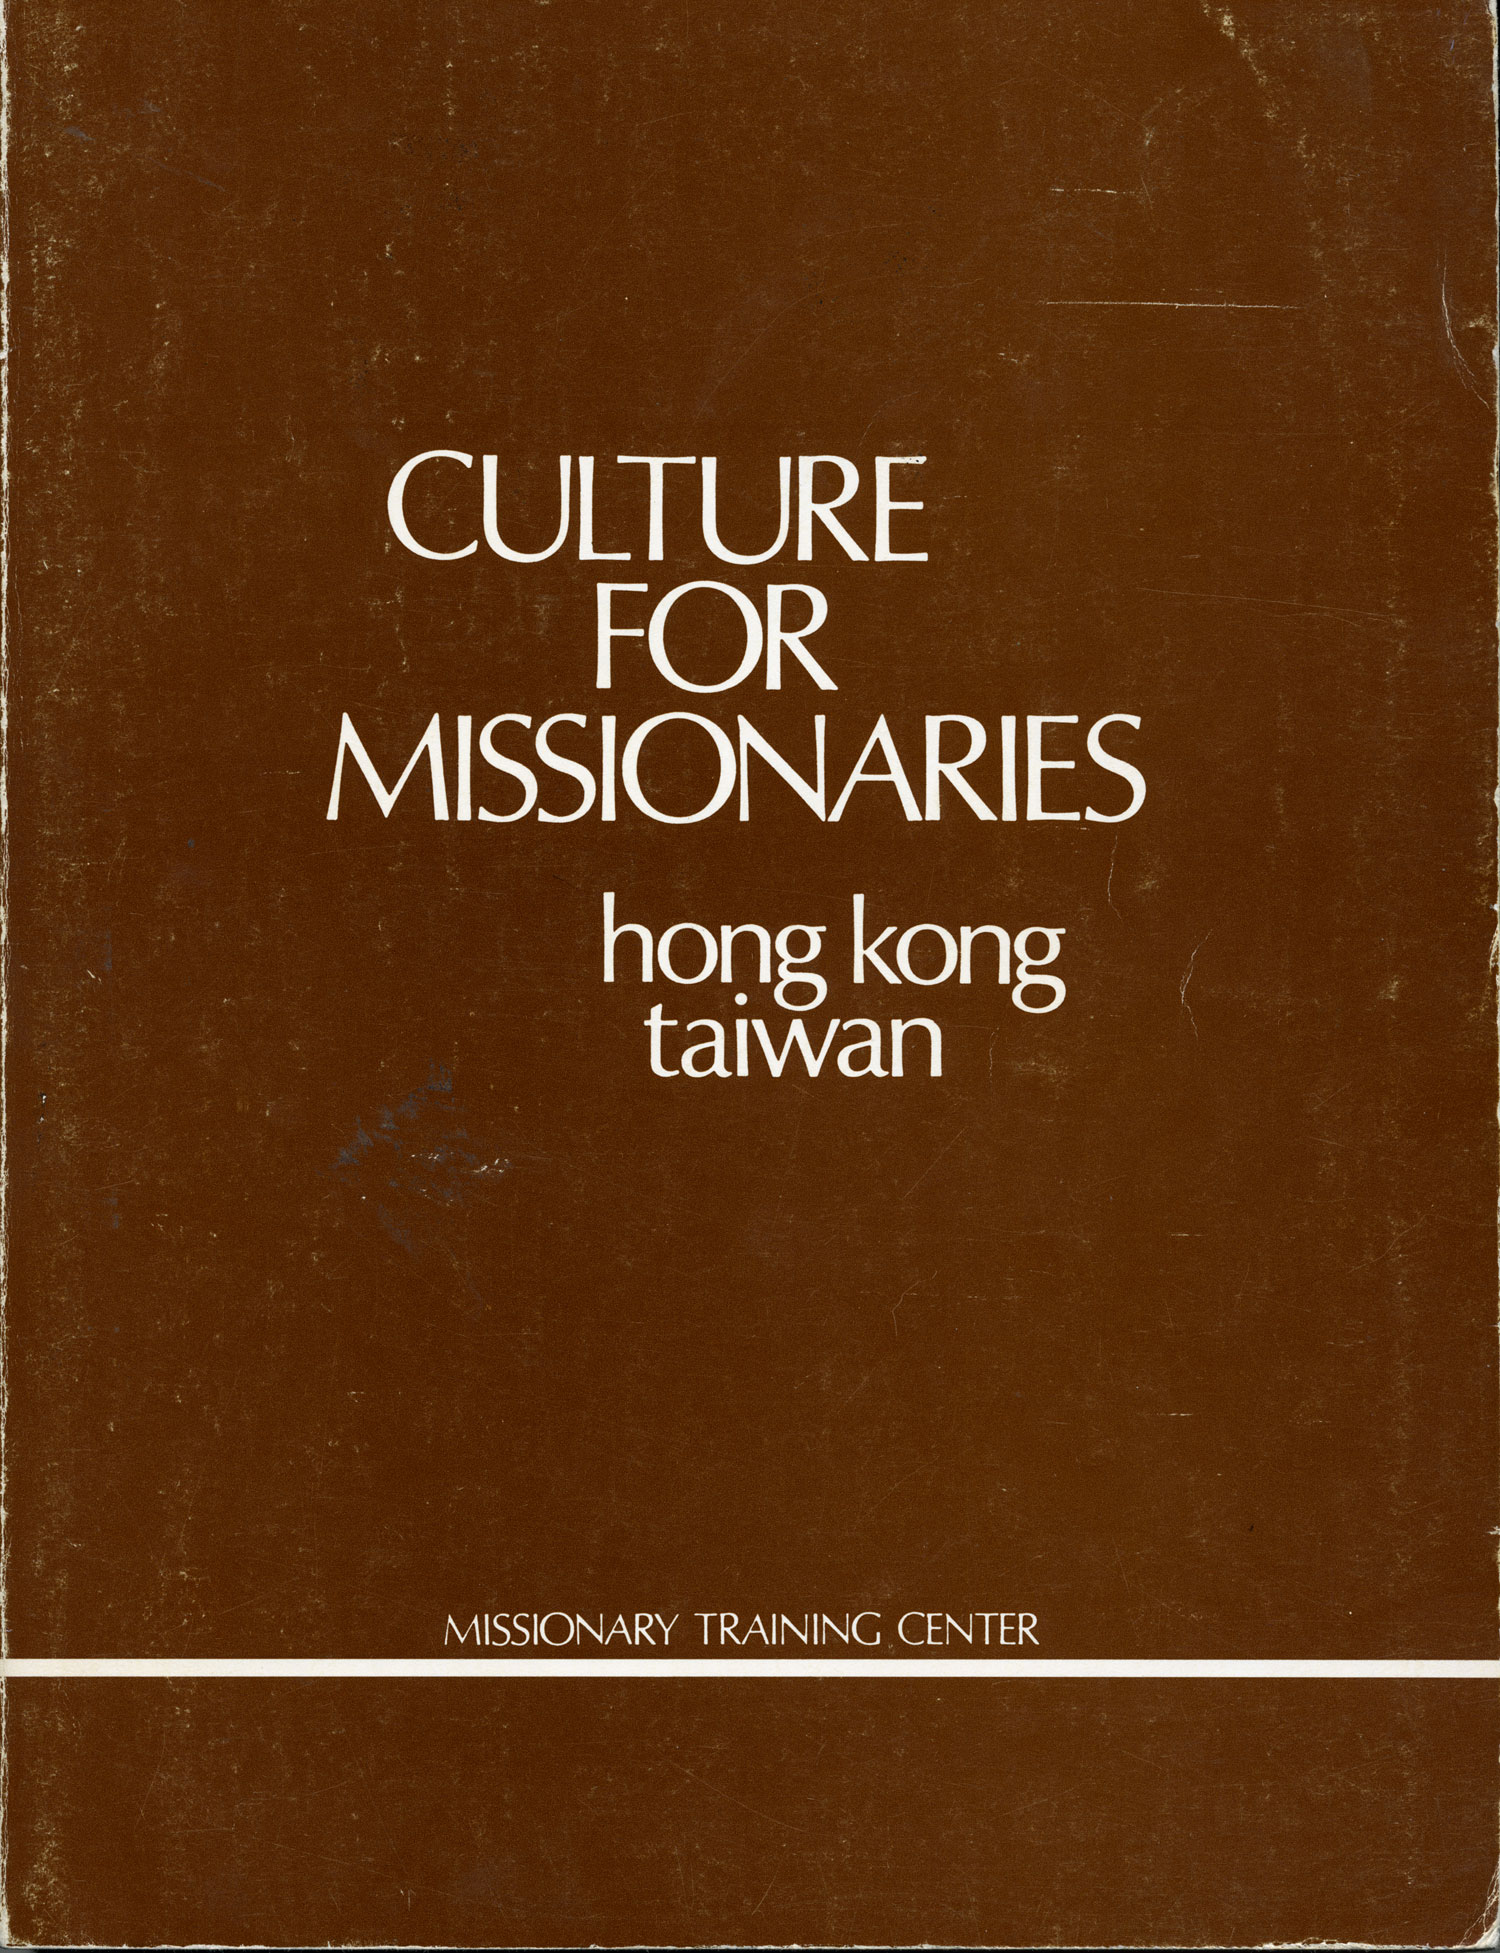 Culture for Missionaries - Taiwan Hong Kong